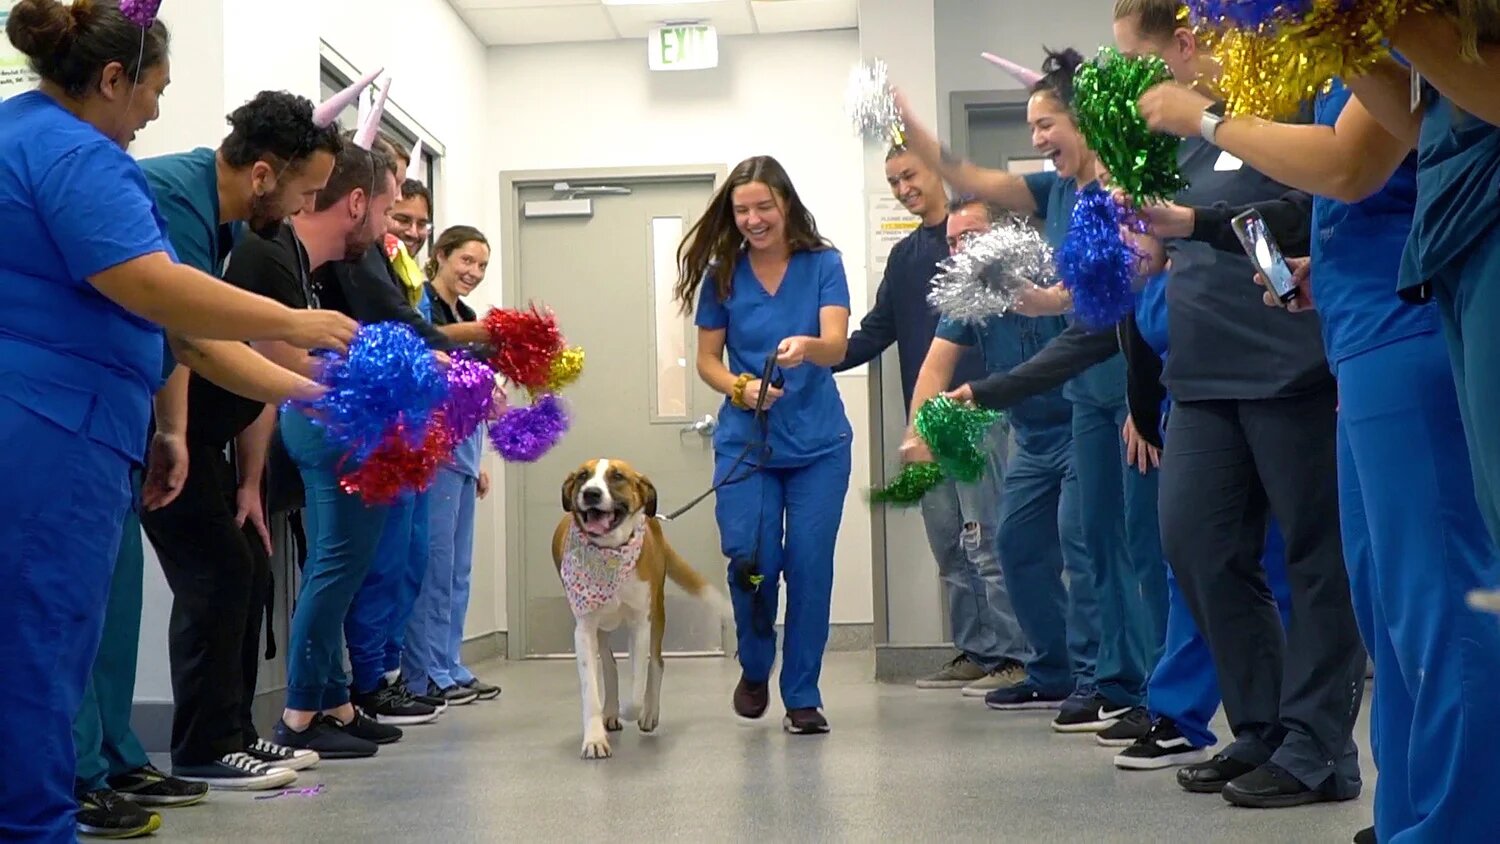 Ce chien réussit à vaincre le cancer, les vétérinaires organisent une fête en son honneur